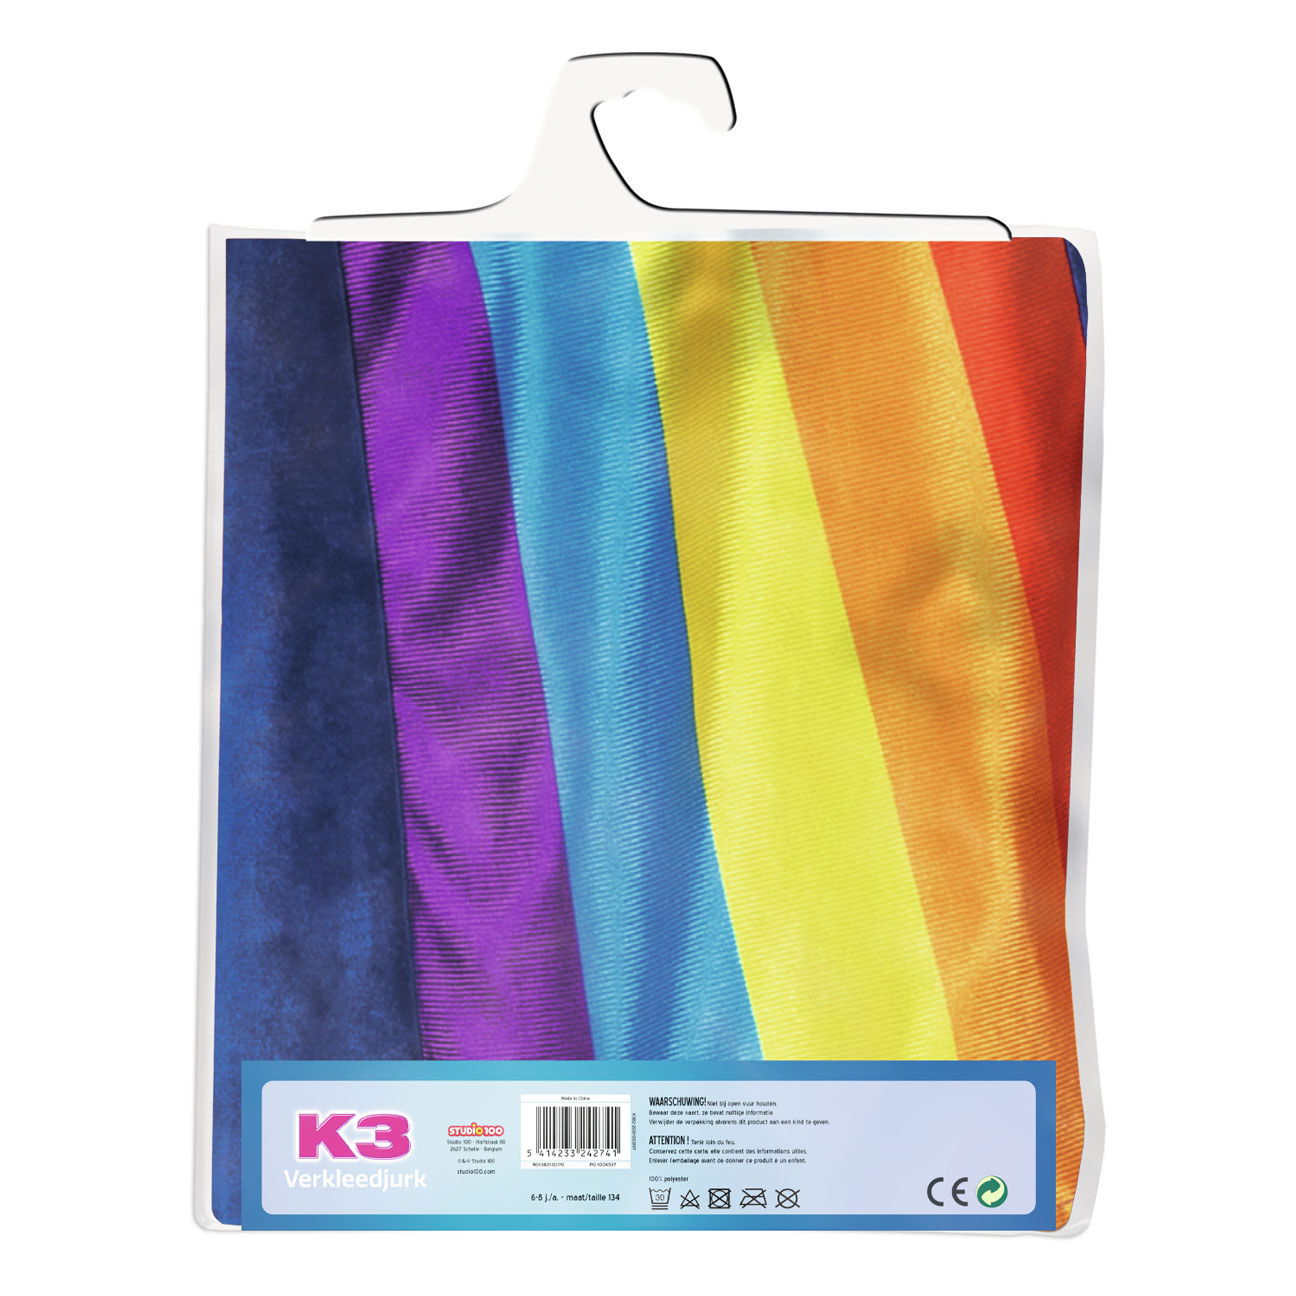 K3 Verkleedjurk - Regenboog Blauw, 6-8 jaar